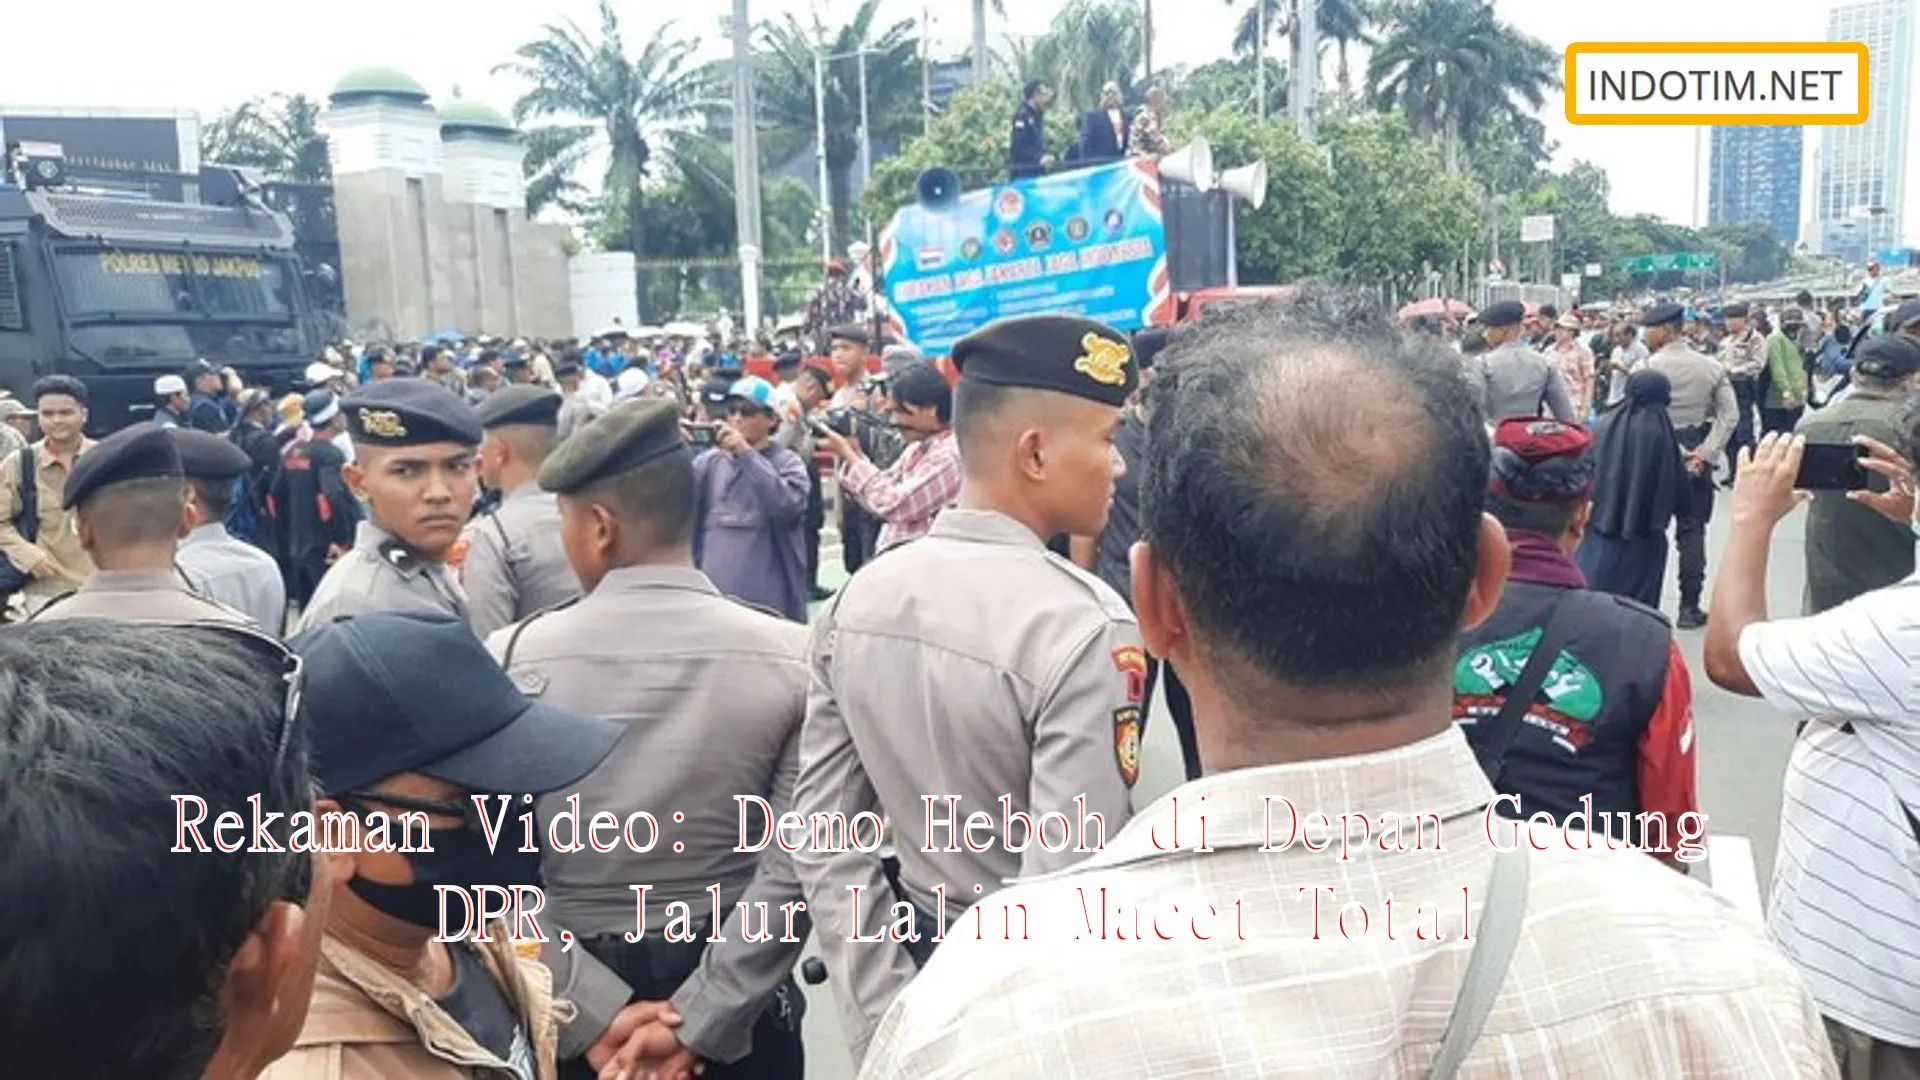 Rekaman Video: Demo Heboh di Depan Gedung DPR, Jalur Lalin Macet Total